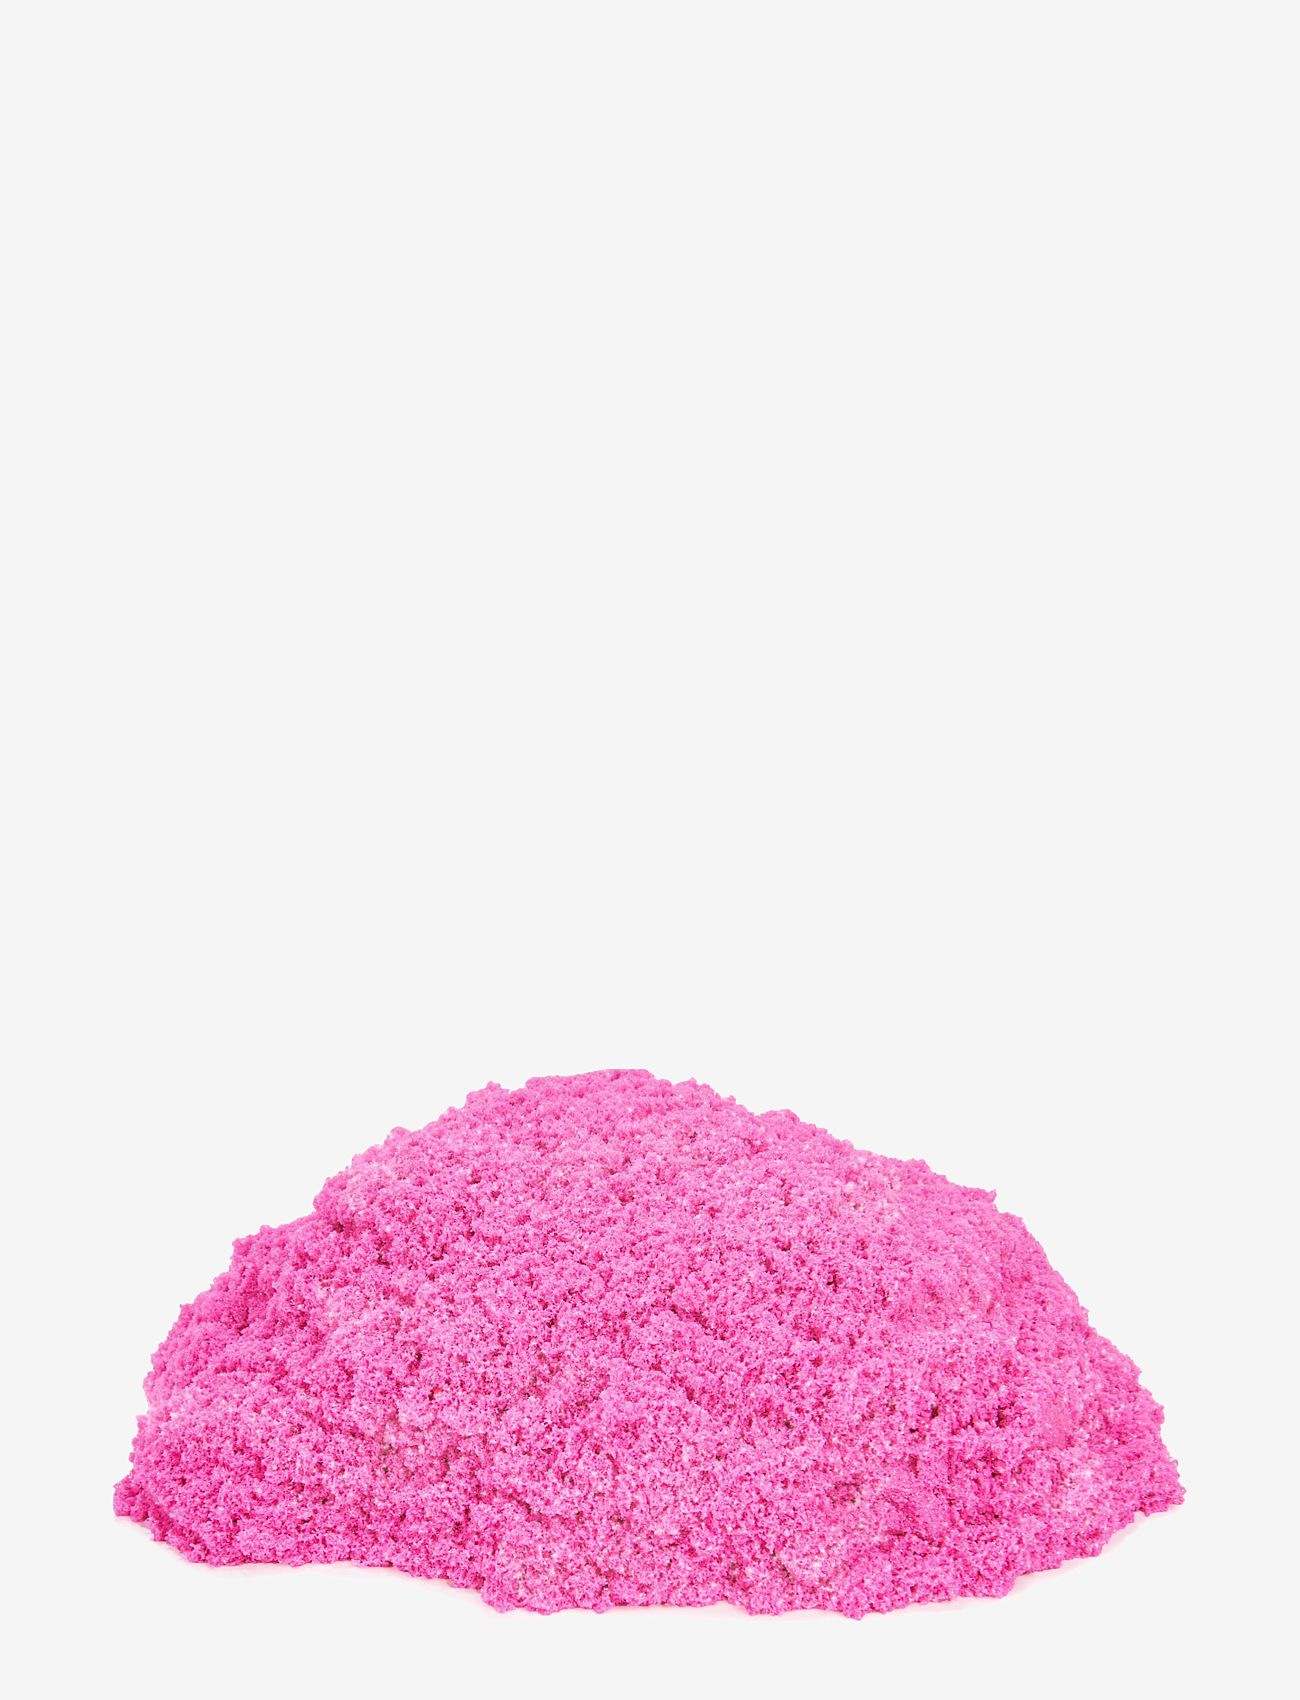 Kinetic Sand - Kinetic Sand Glitter Sand Pink - lima - multi - 1